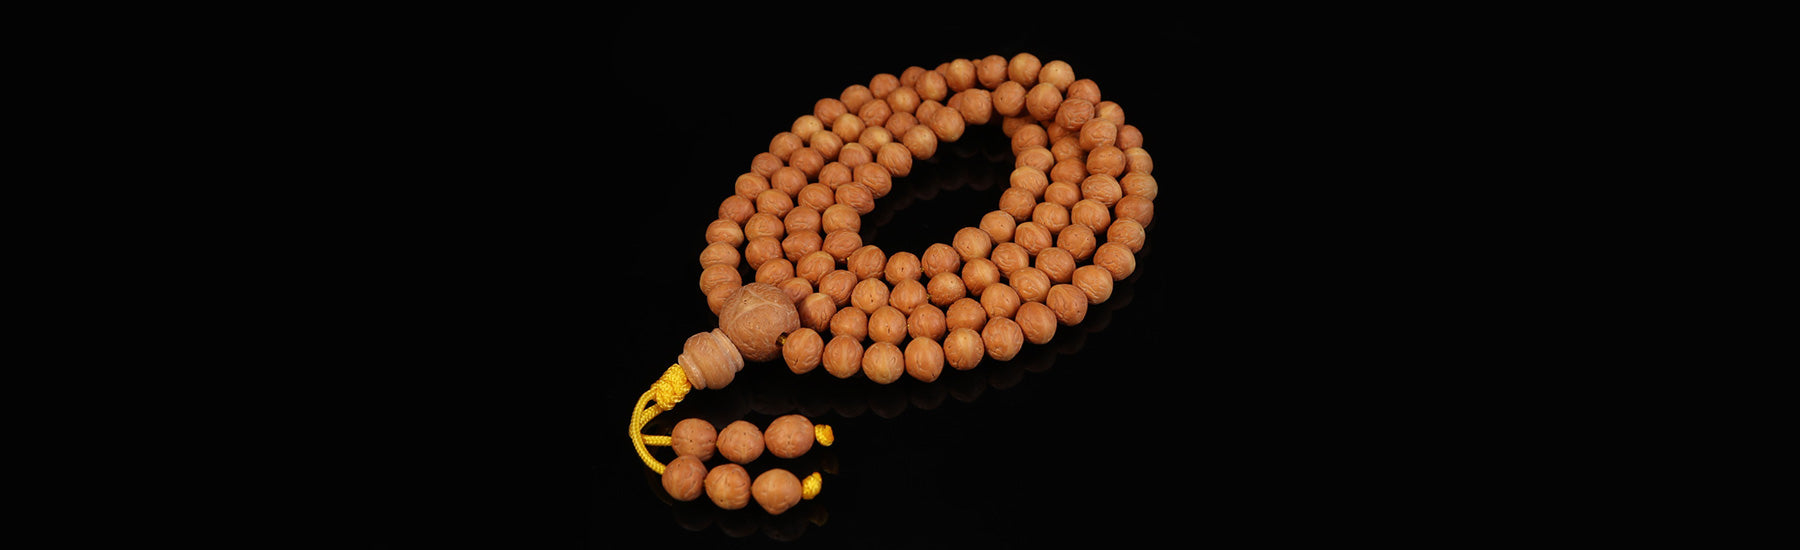 108 Mala Beads, Olive Wood Prayer Beads 23 inches Yoga Necklace Meditation  908